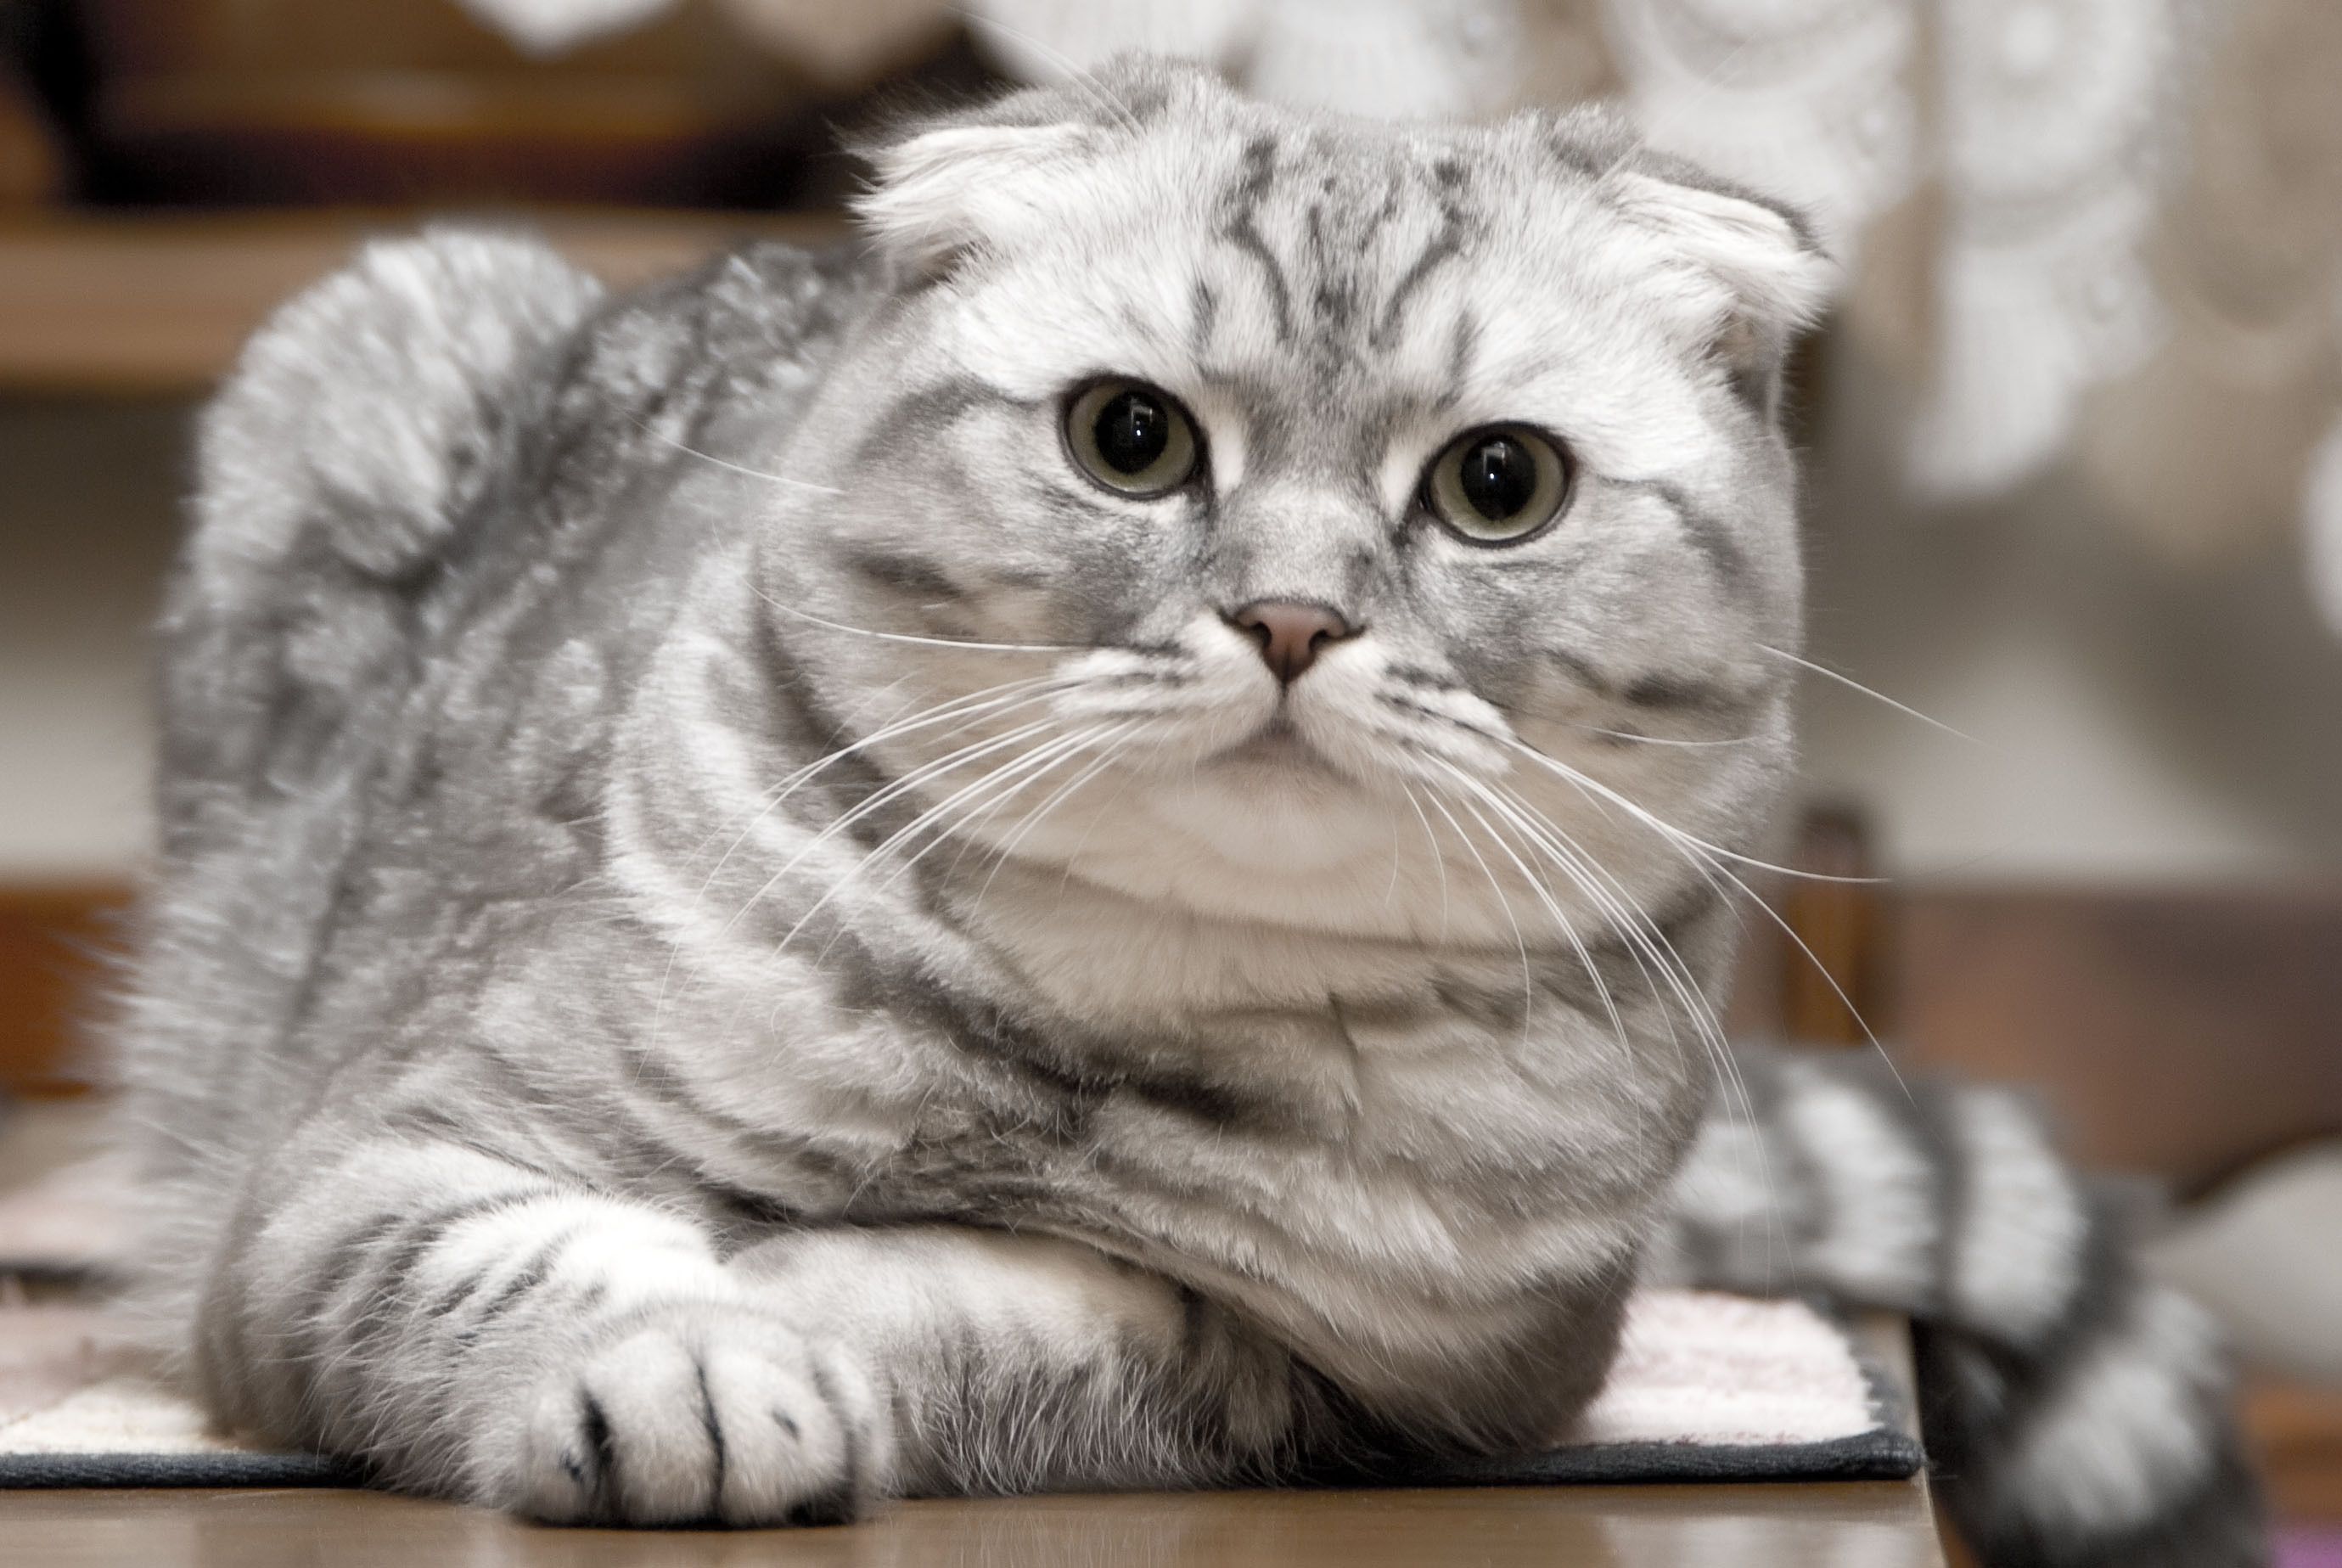 scottish fold kittens. Beautiful silver Scottish Fold cat